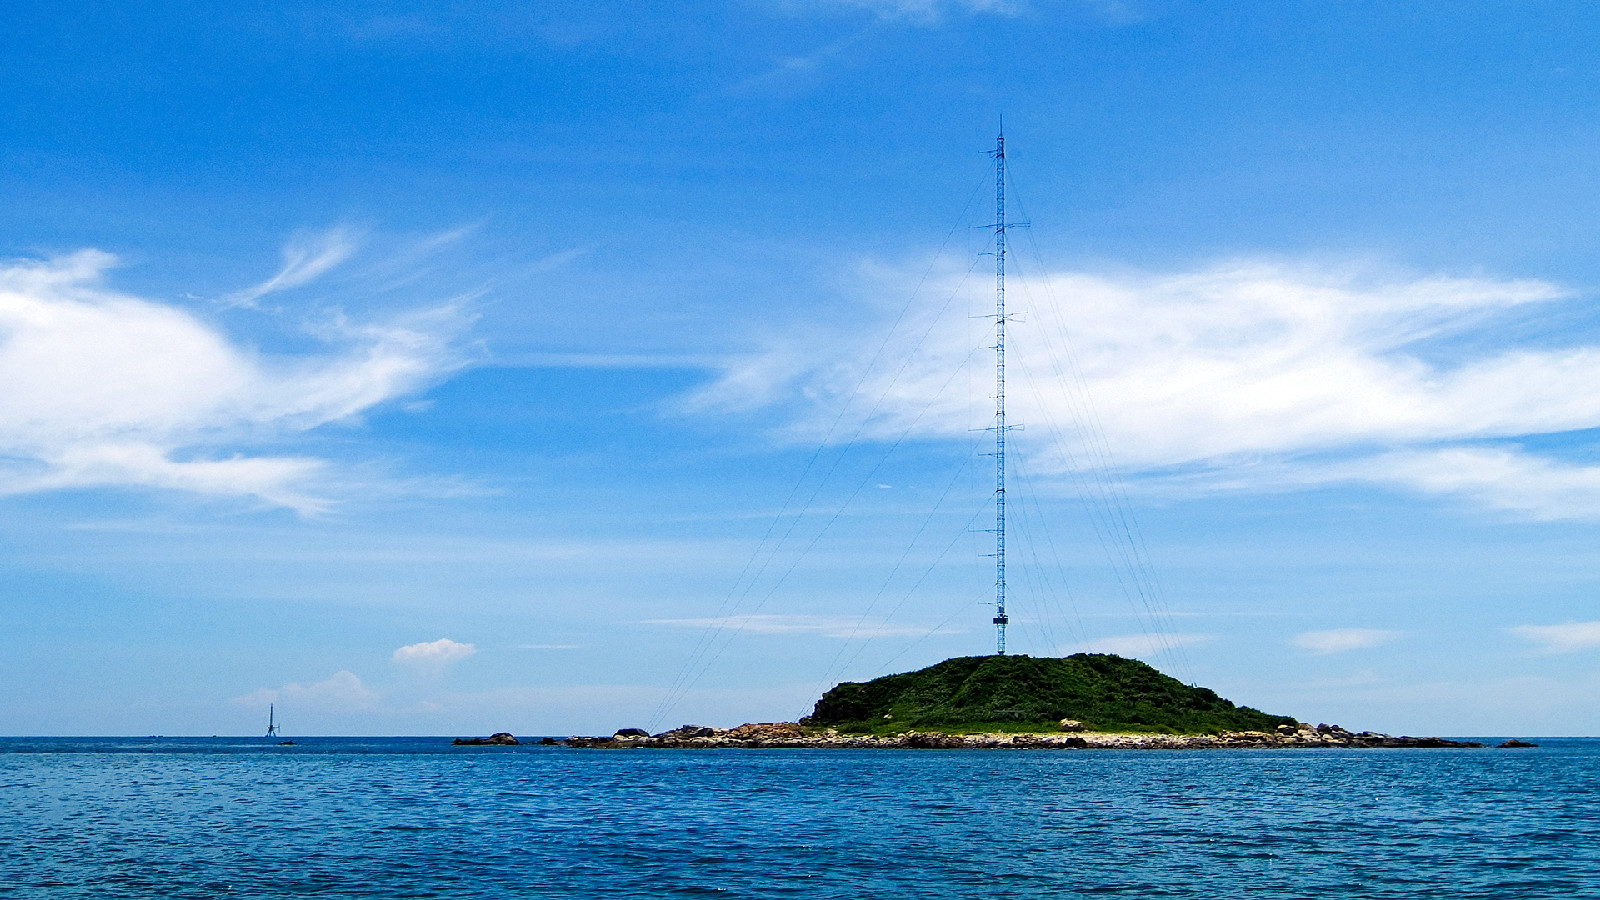 百米海氣通量氣象觀測塔